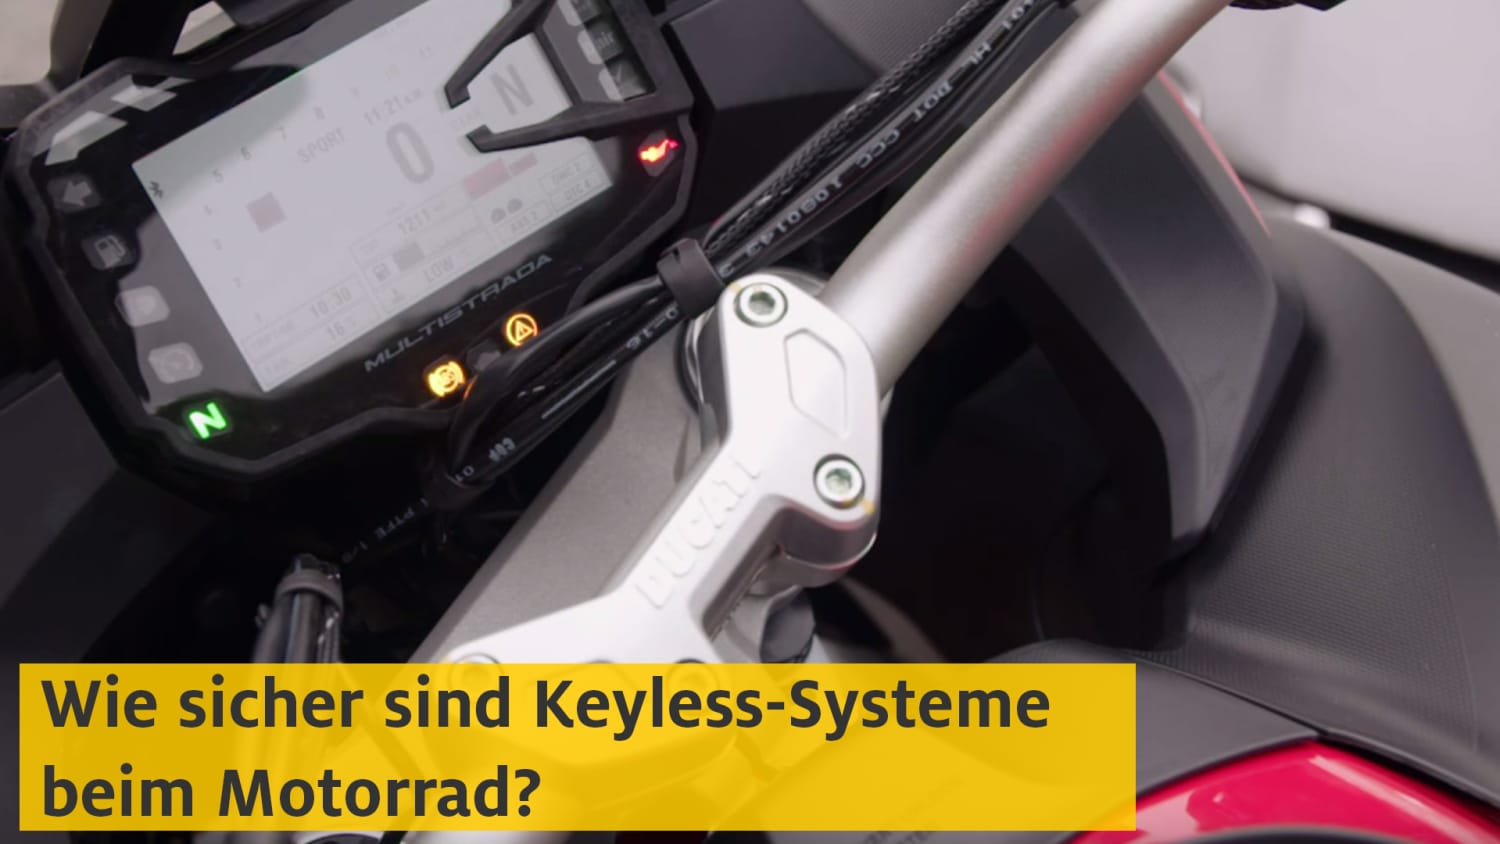 Keyless-Systeme bei Motorrädern - Diebstahlsicherheit?